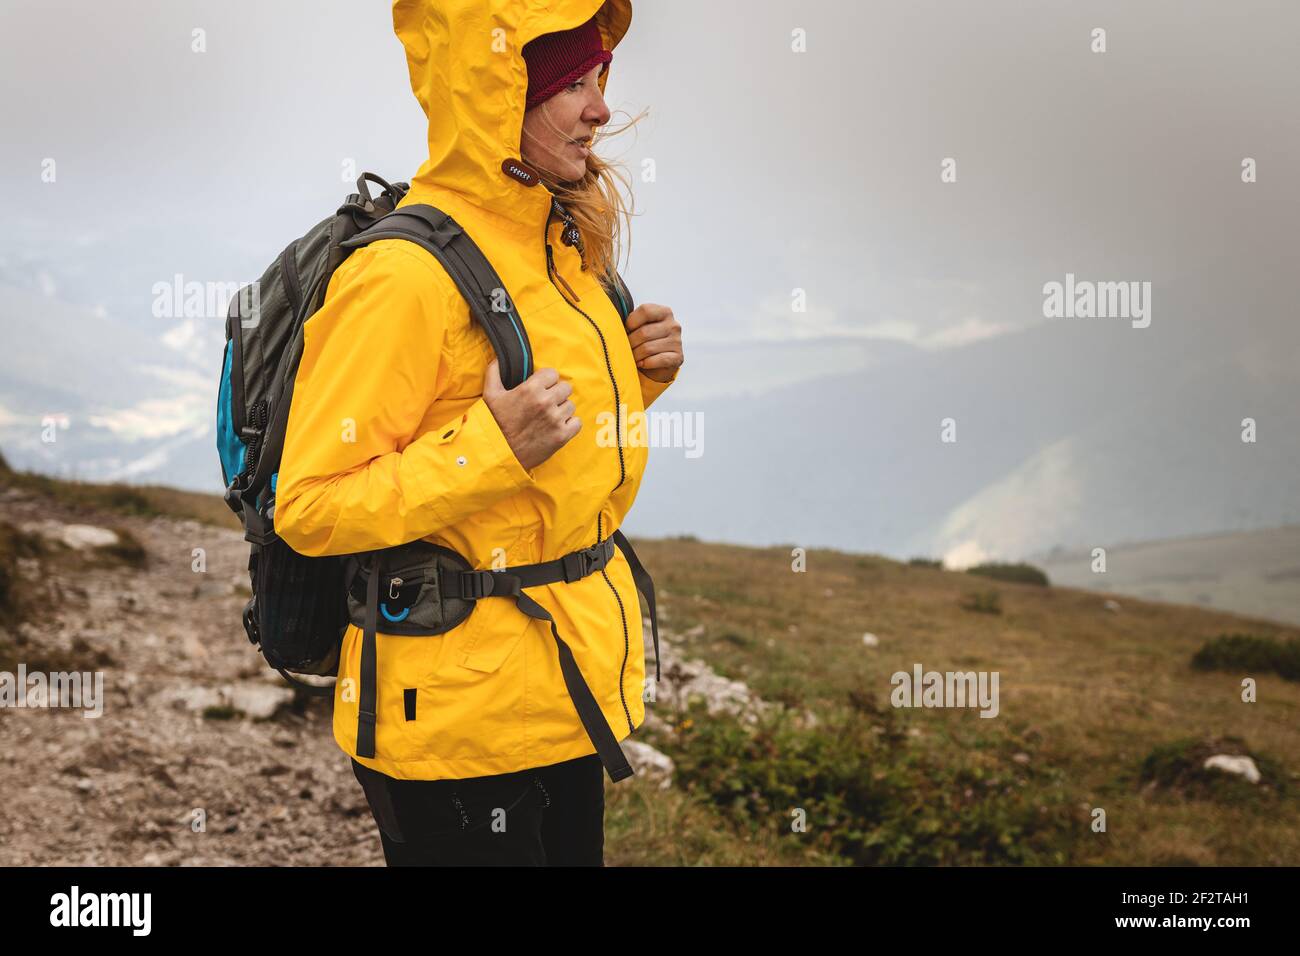 Mujer senderismo en las montañas en clima extremo. Chaqueta impermeable de uso turístico con capucha. deportiva y mochila Fotografía de Alamy